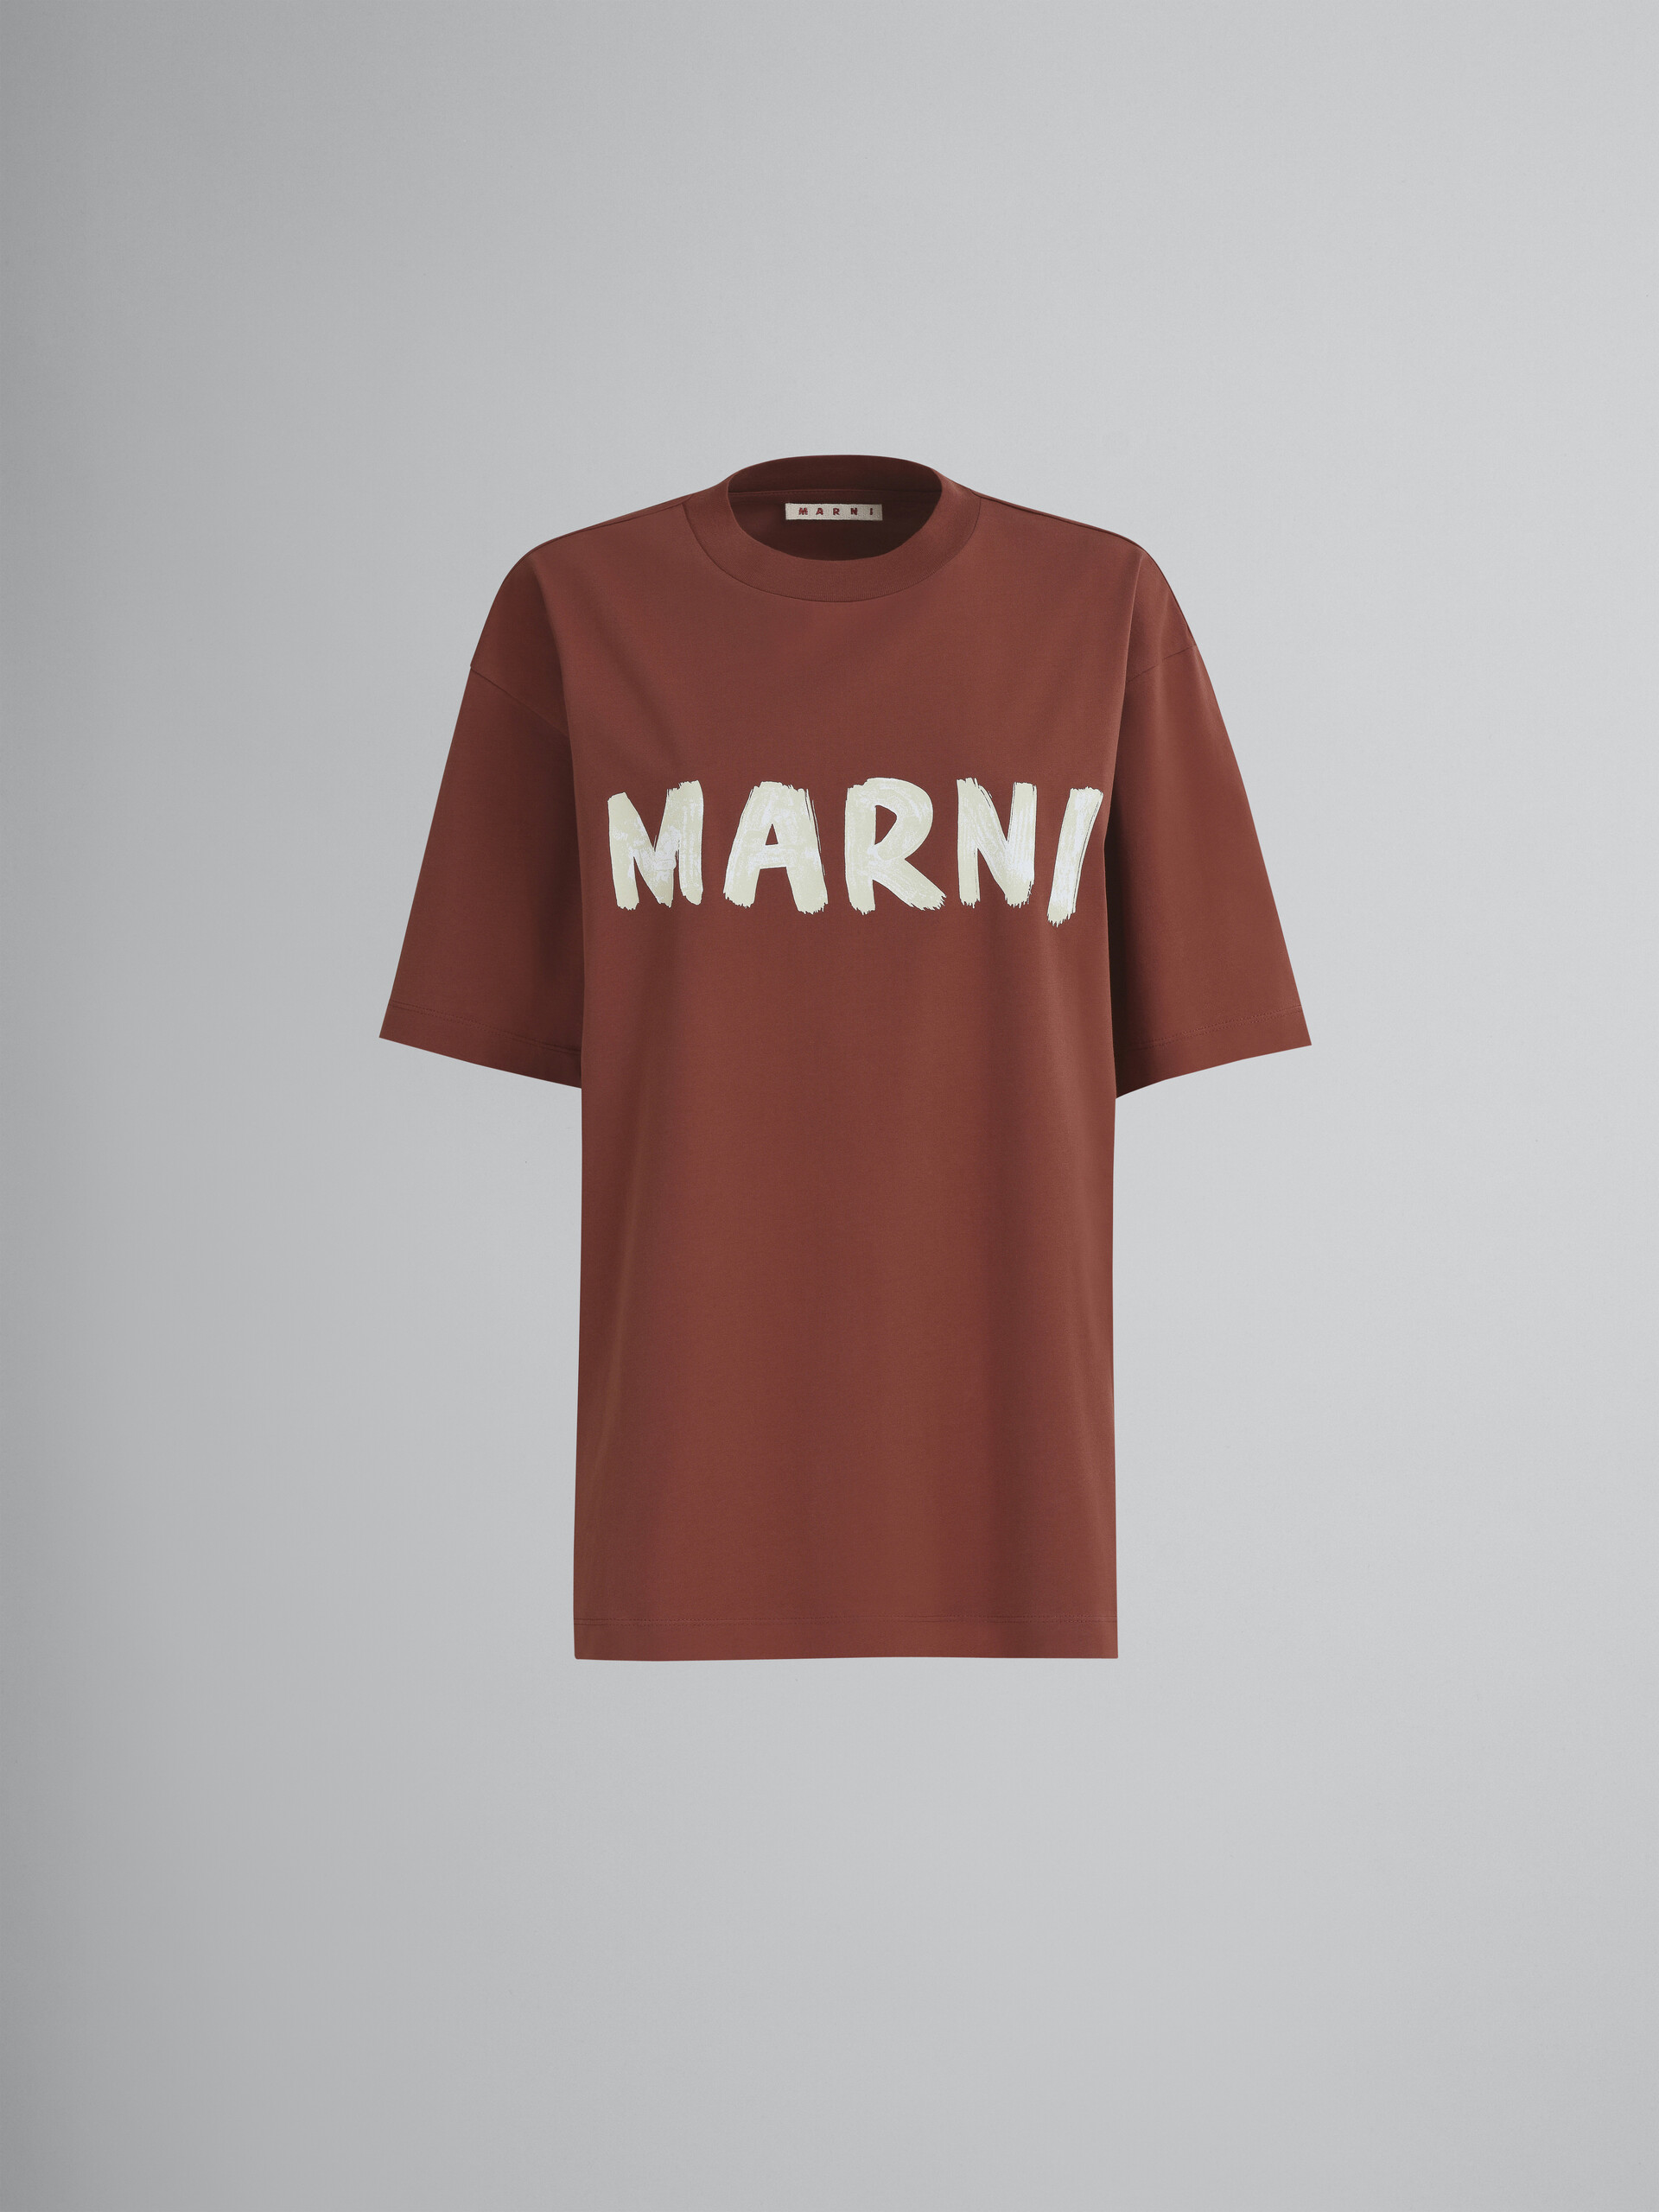 T-shirt en jersey biologique marron à imprimé logo - T-shirts - Image 1